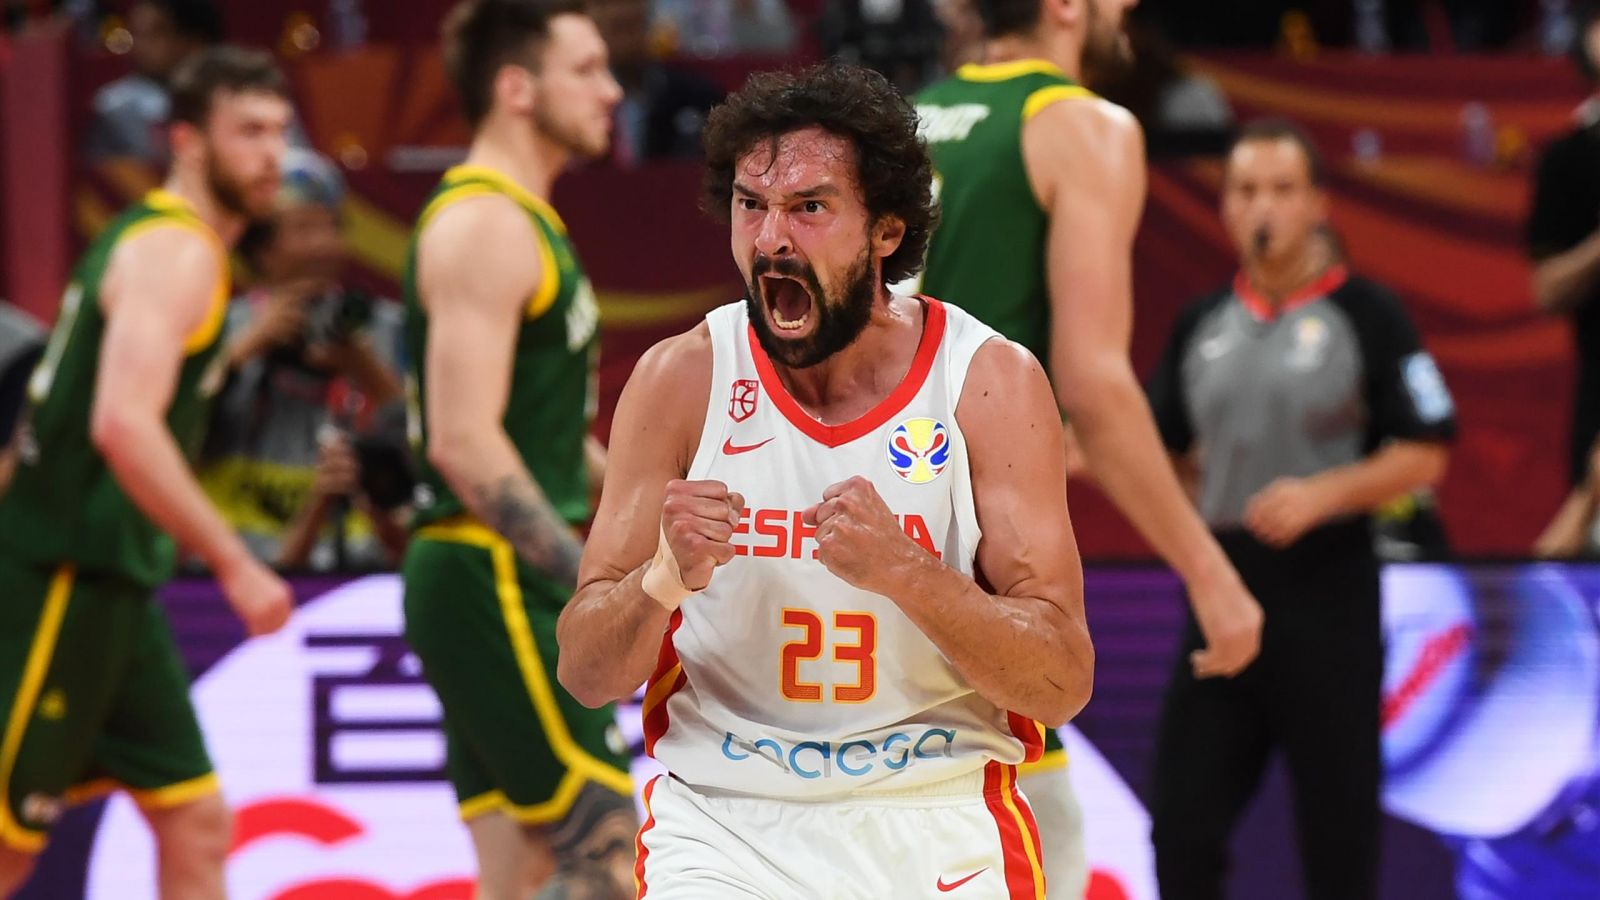 Basket Mondial 2019 : L’Espagne accède en finale en écartant l’Australie après deux prolongations